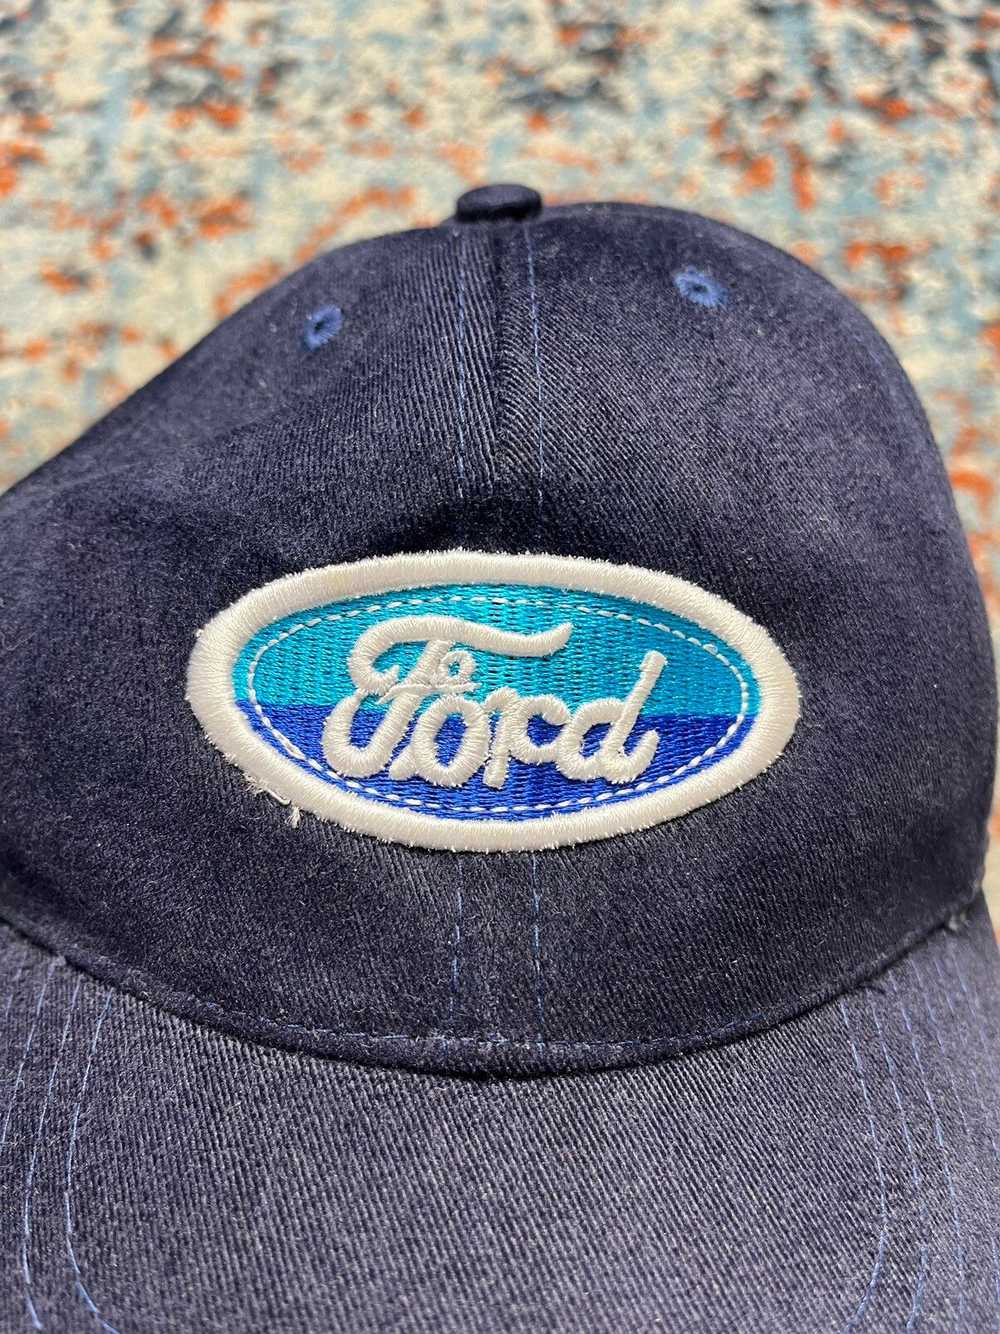 Ford × Streetwear × Vintage Vintage 90s Ford logo… - image 3